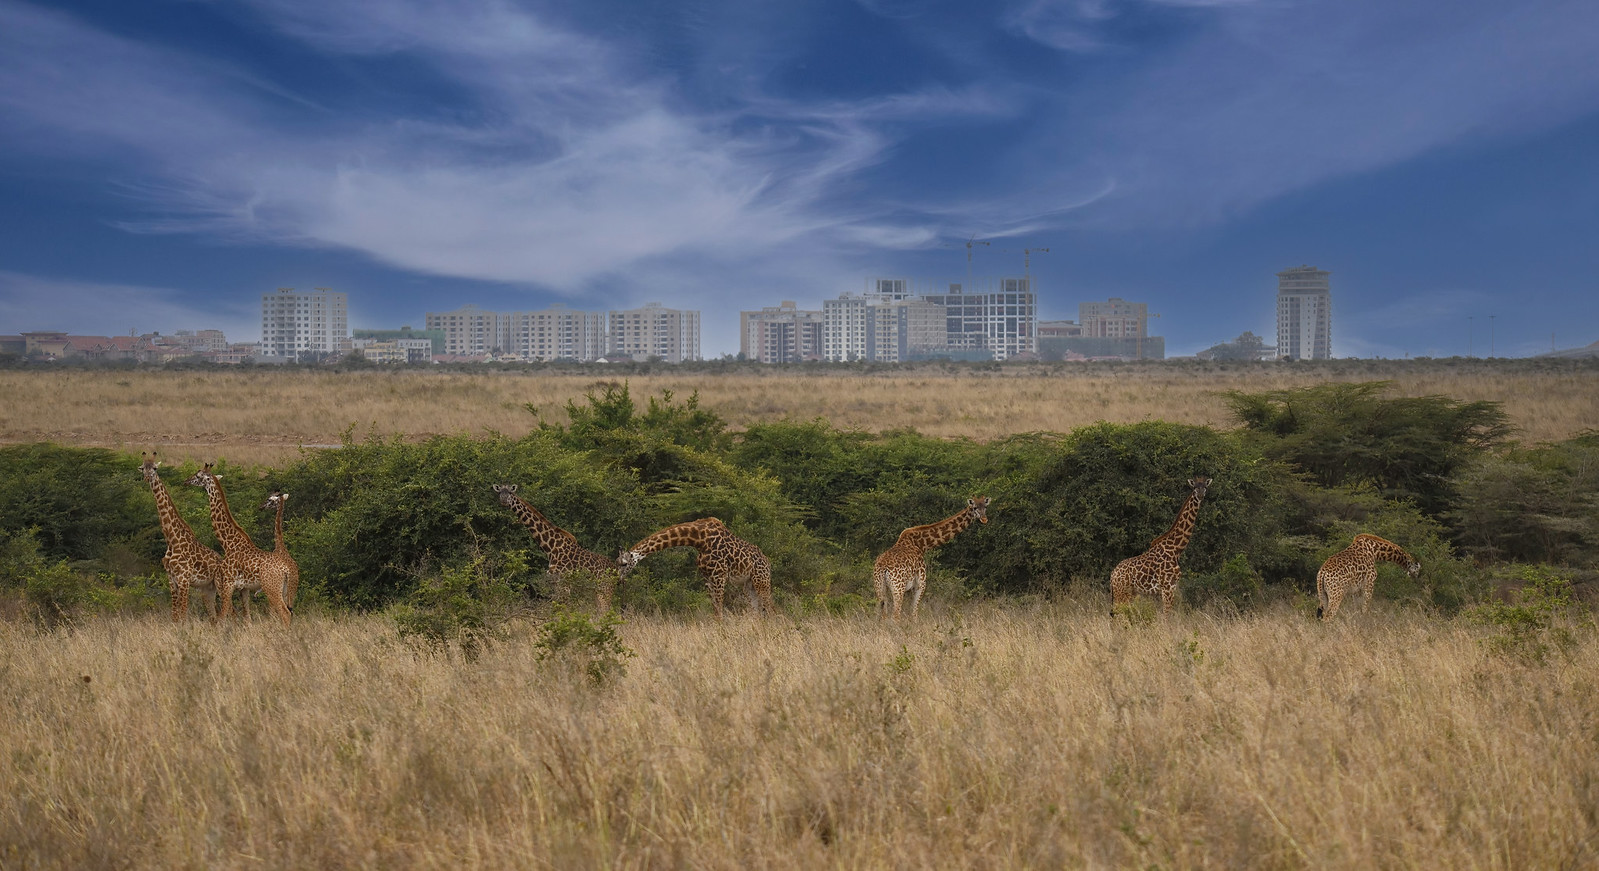 Nairobi National park